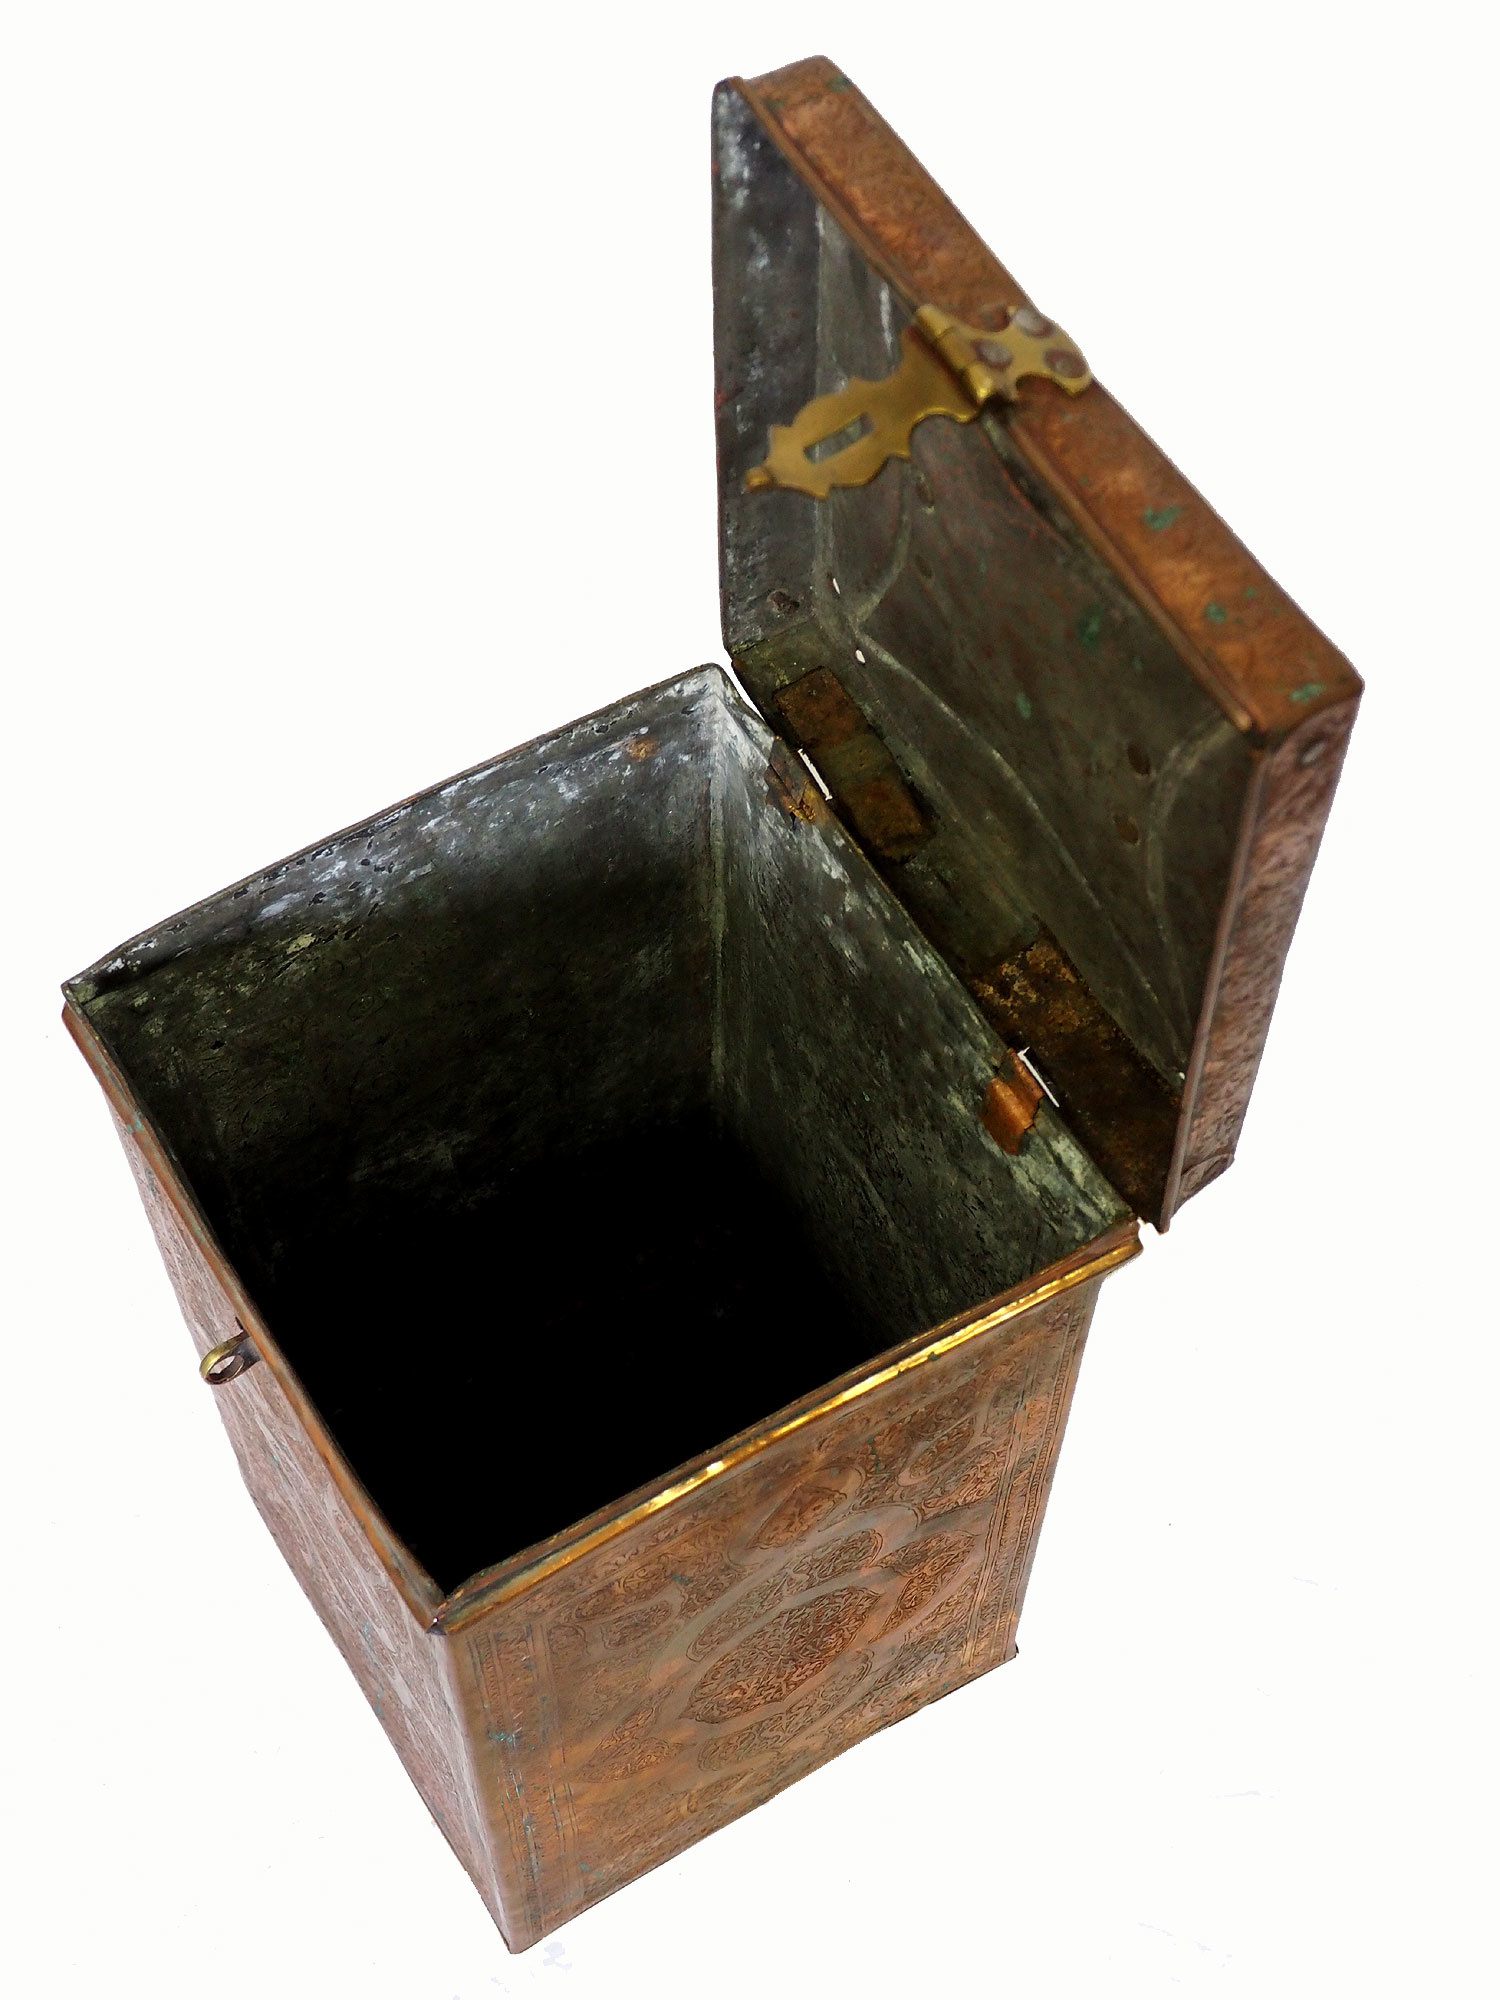 Antik Massiv islamische Kupfer verzinnte Kiste Truhe gefäß büchse Schmuck Dose schatulle aus Afghanistan 19. Jh. Nr:IT